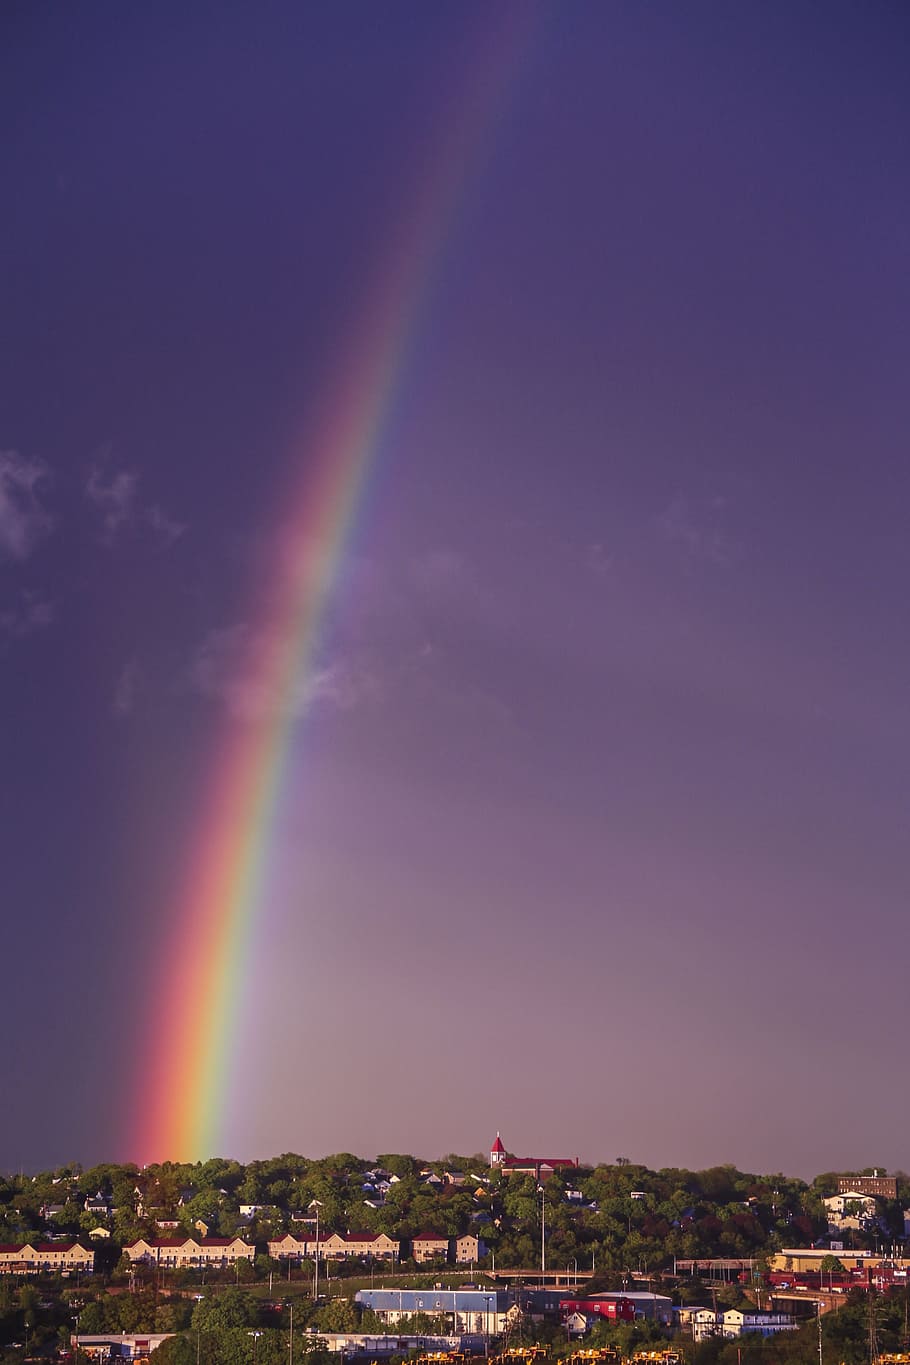 A rainbow is seen over the city - Rainbows